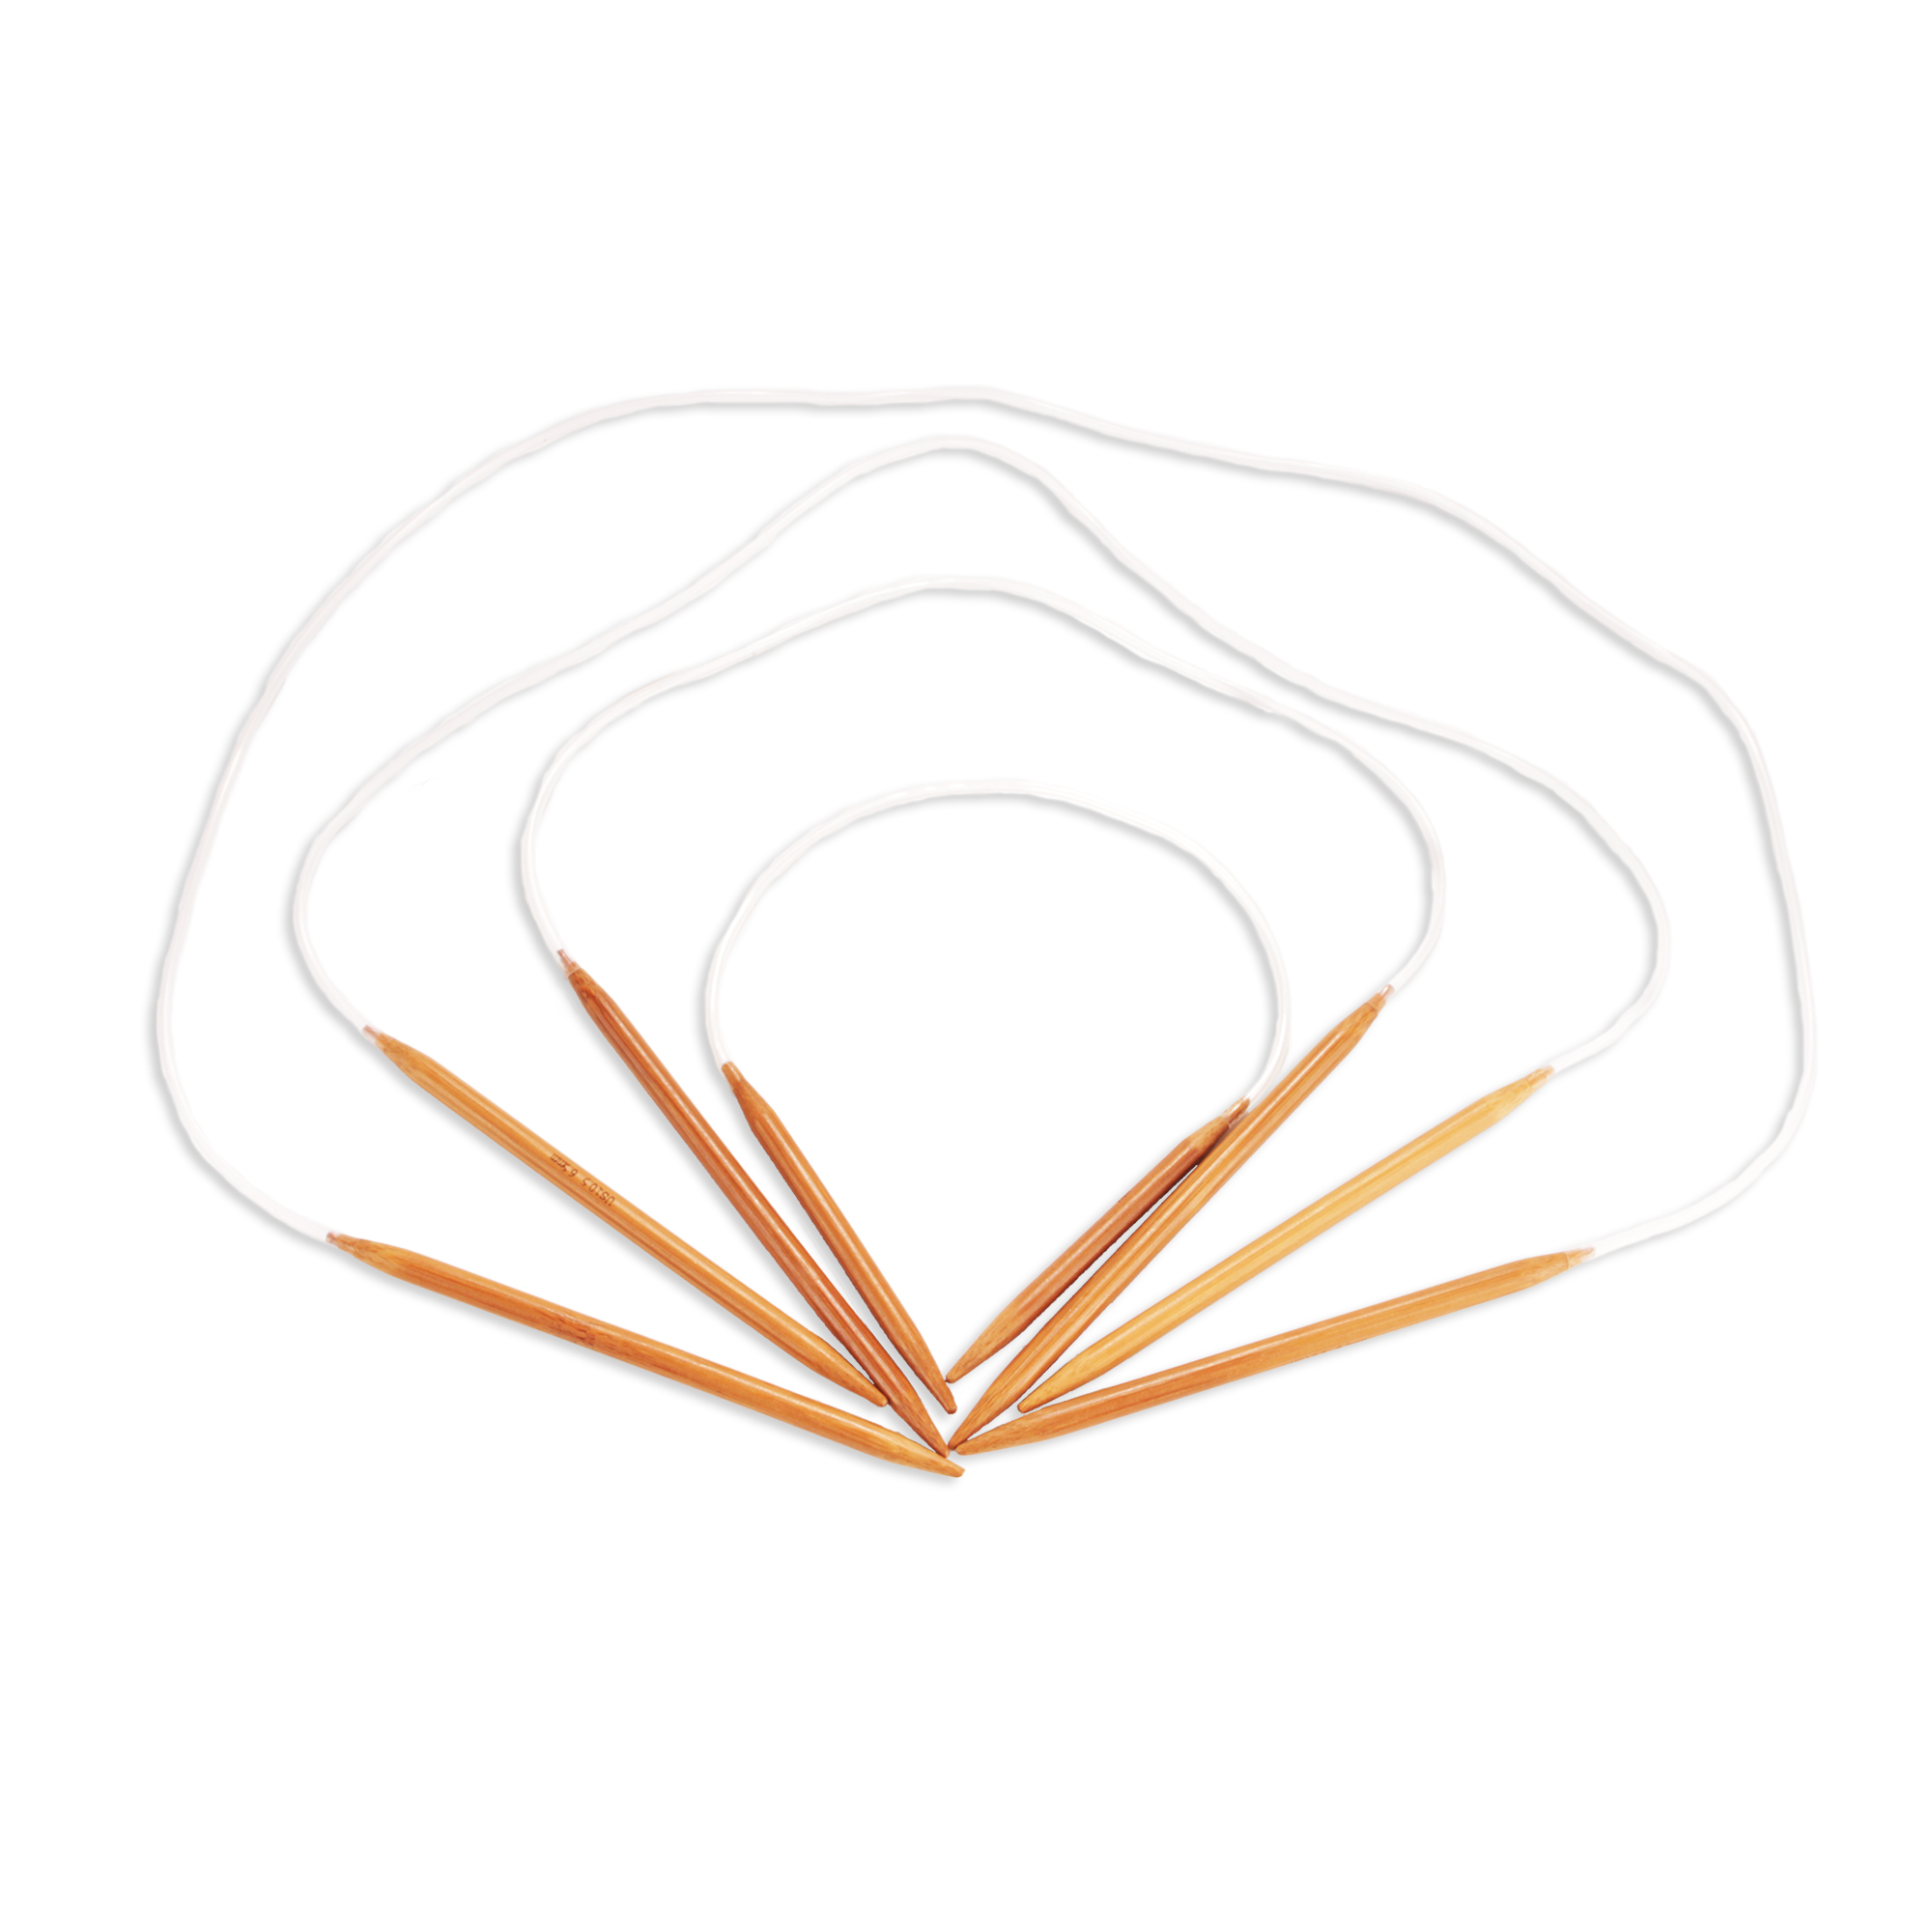 JubileeYarn Circular Bamboo Knitting Needles Set, 4 Lengths (16 24 30  40), Carbonized Brown